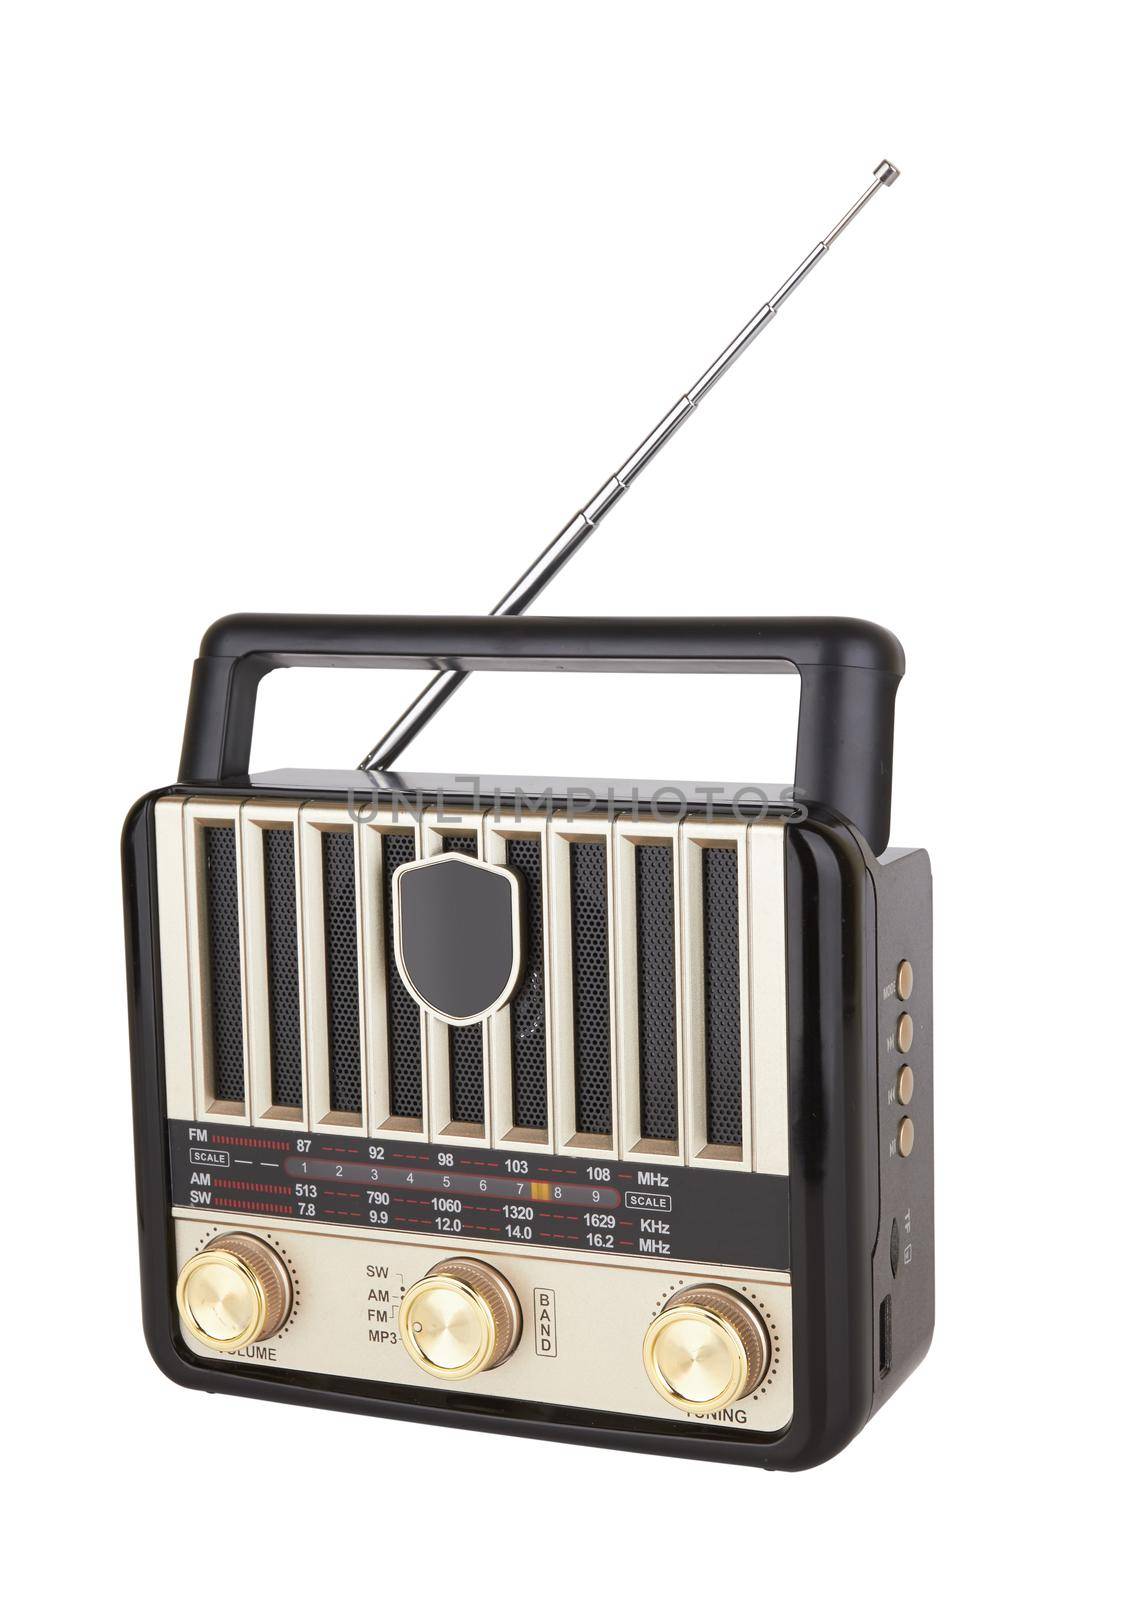 Radio retro portable receiver by pioneer111